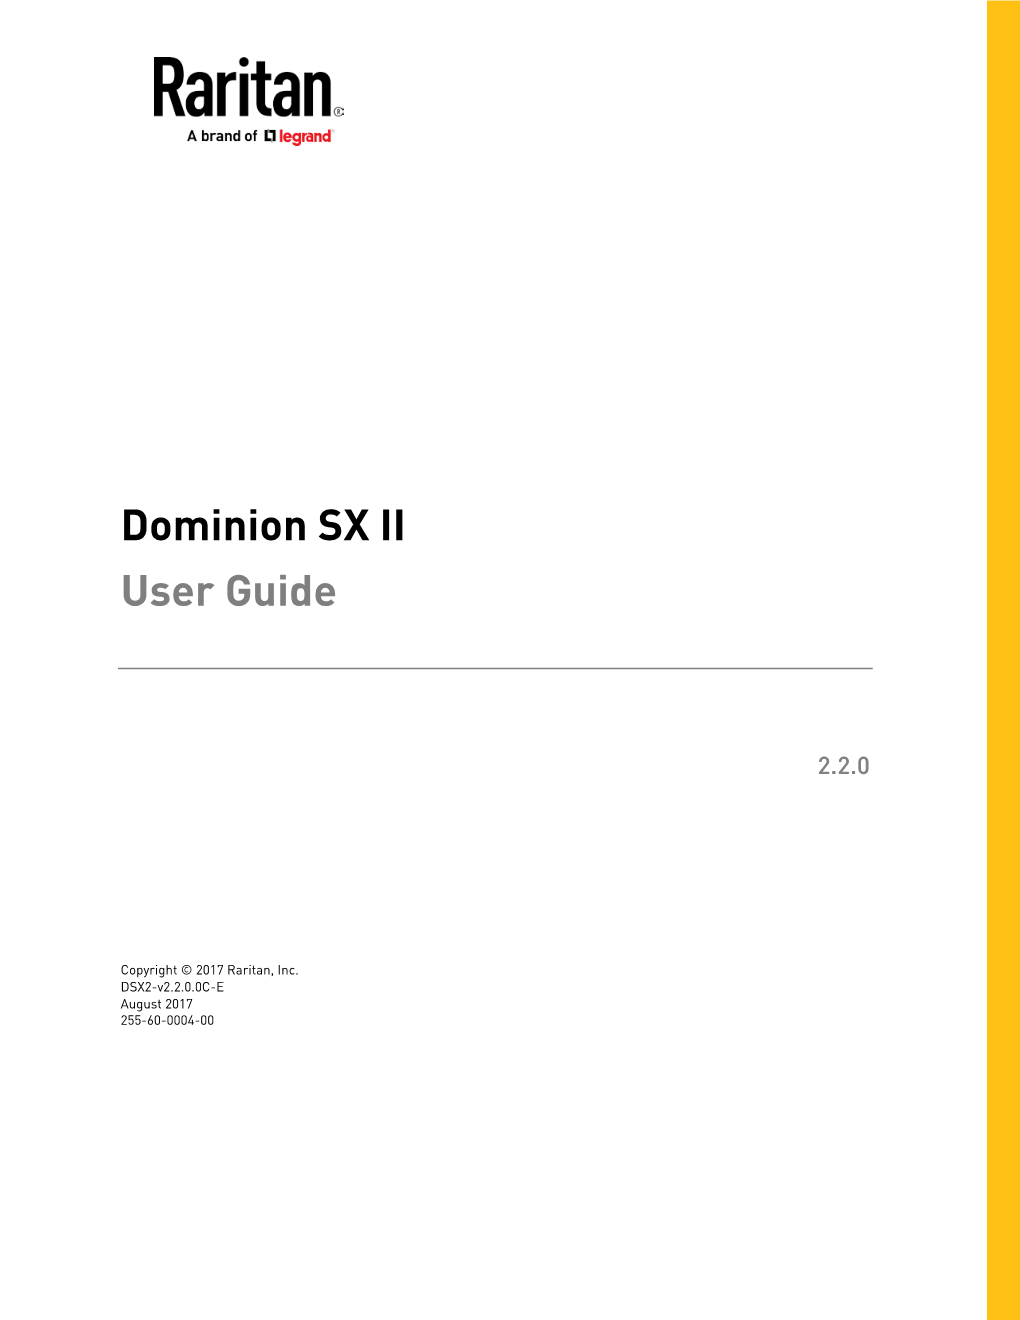 Dominion SX II User Guide